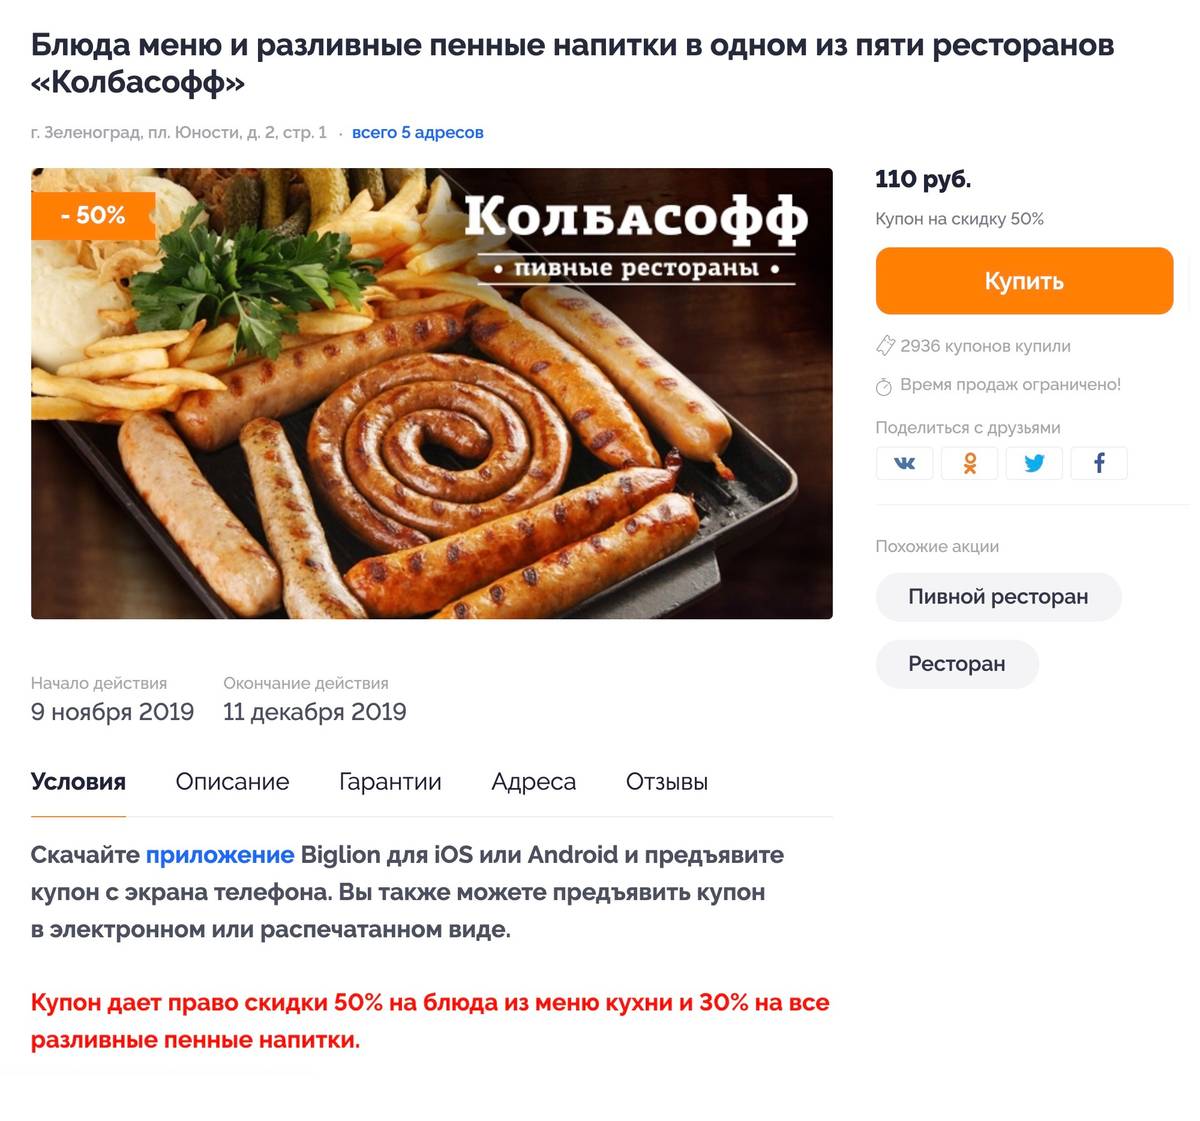 Купон за 110 рублей в «Колбасофф» дает скидку 50% на блюда из меню кухни и 30% на все разливные пенные напитки